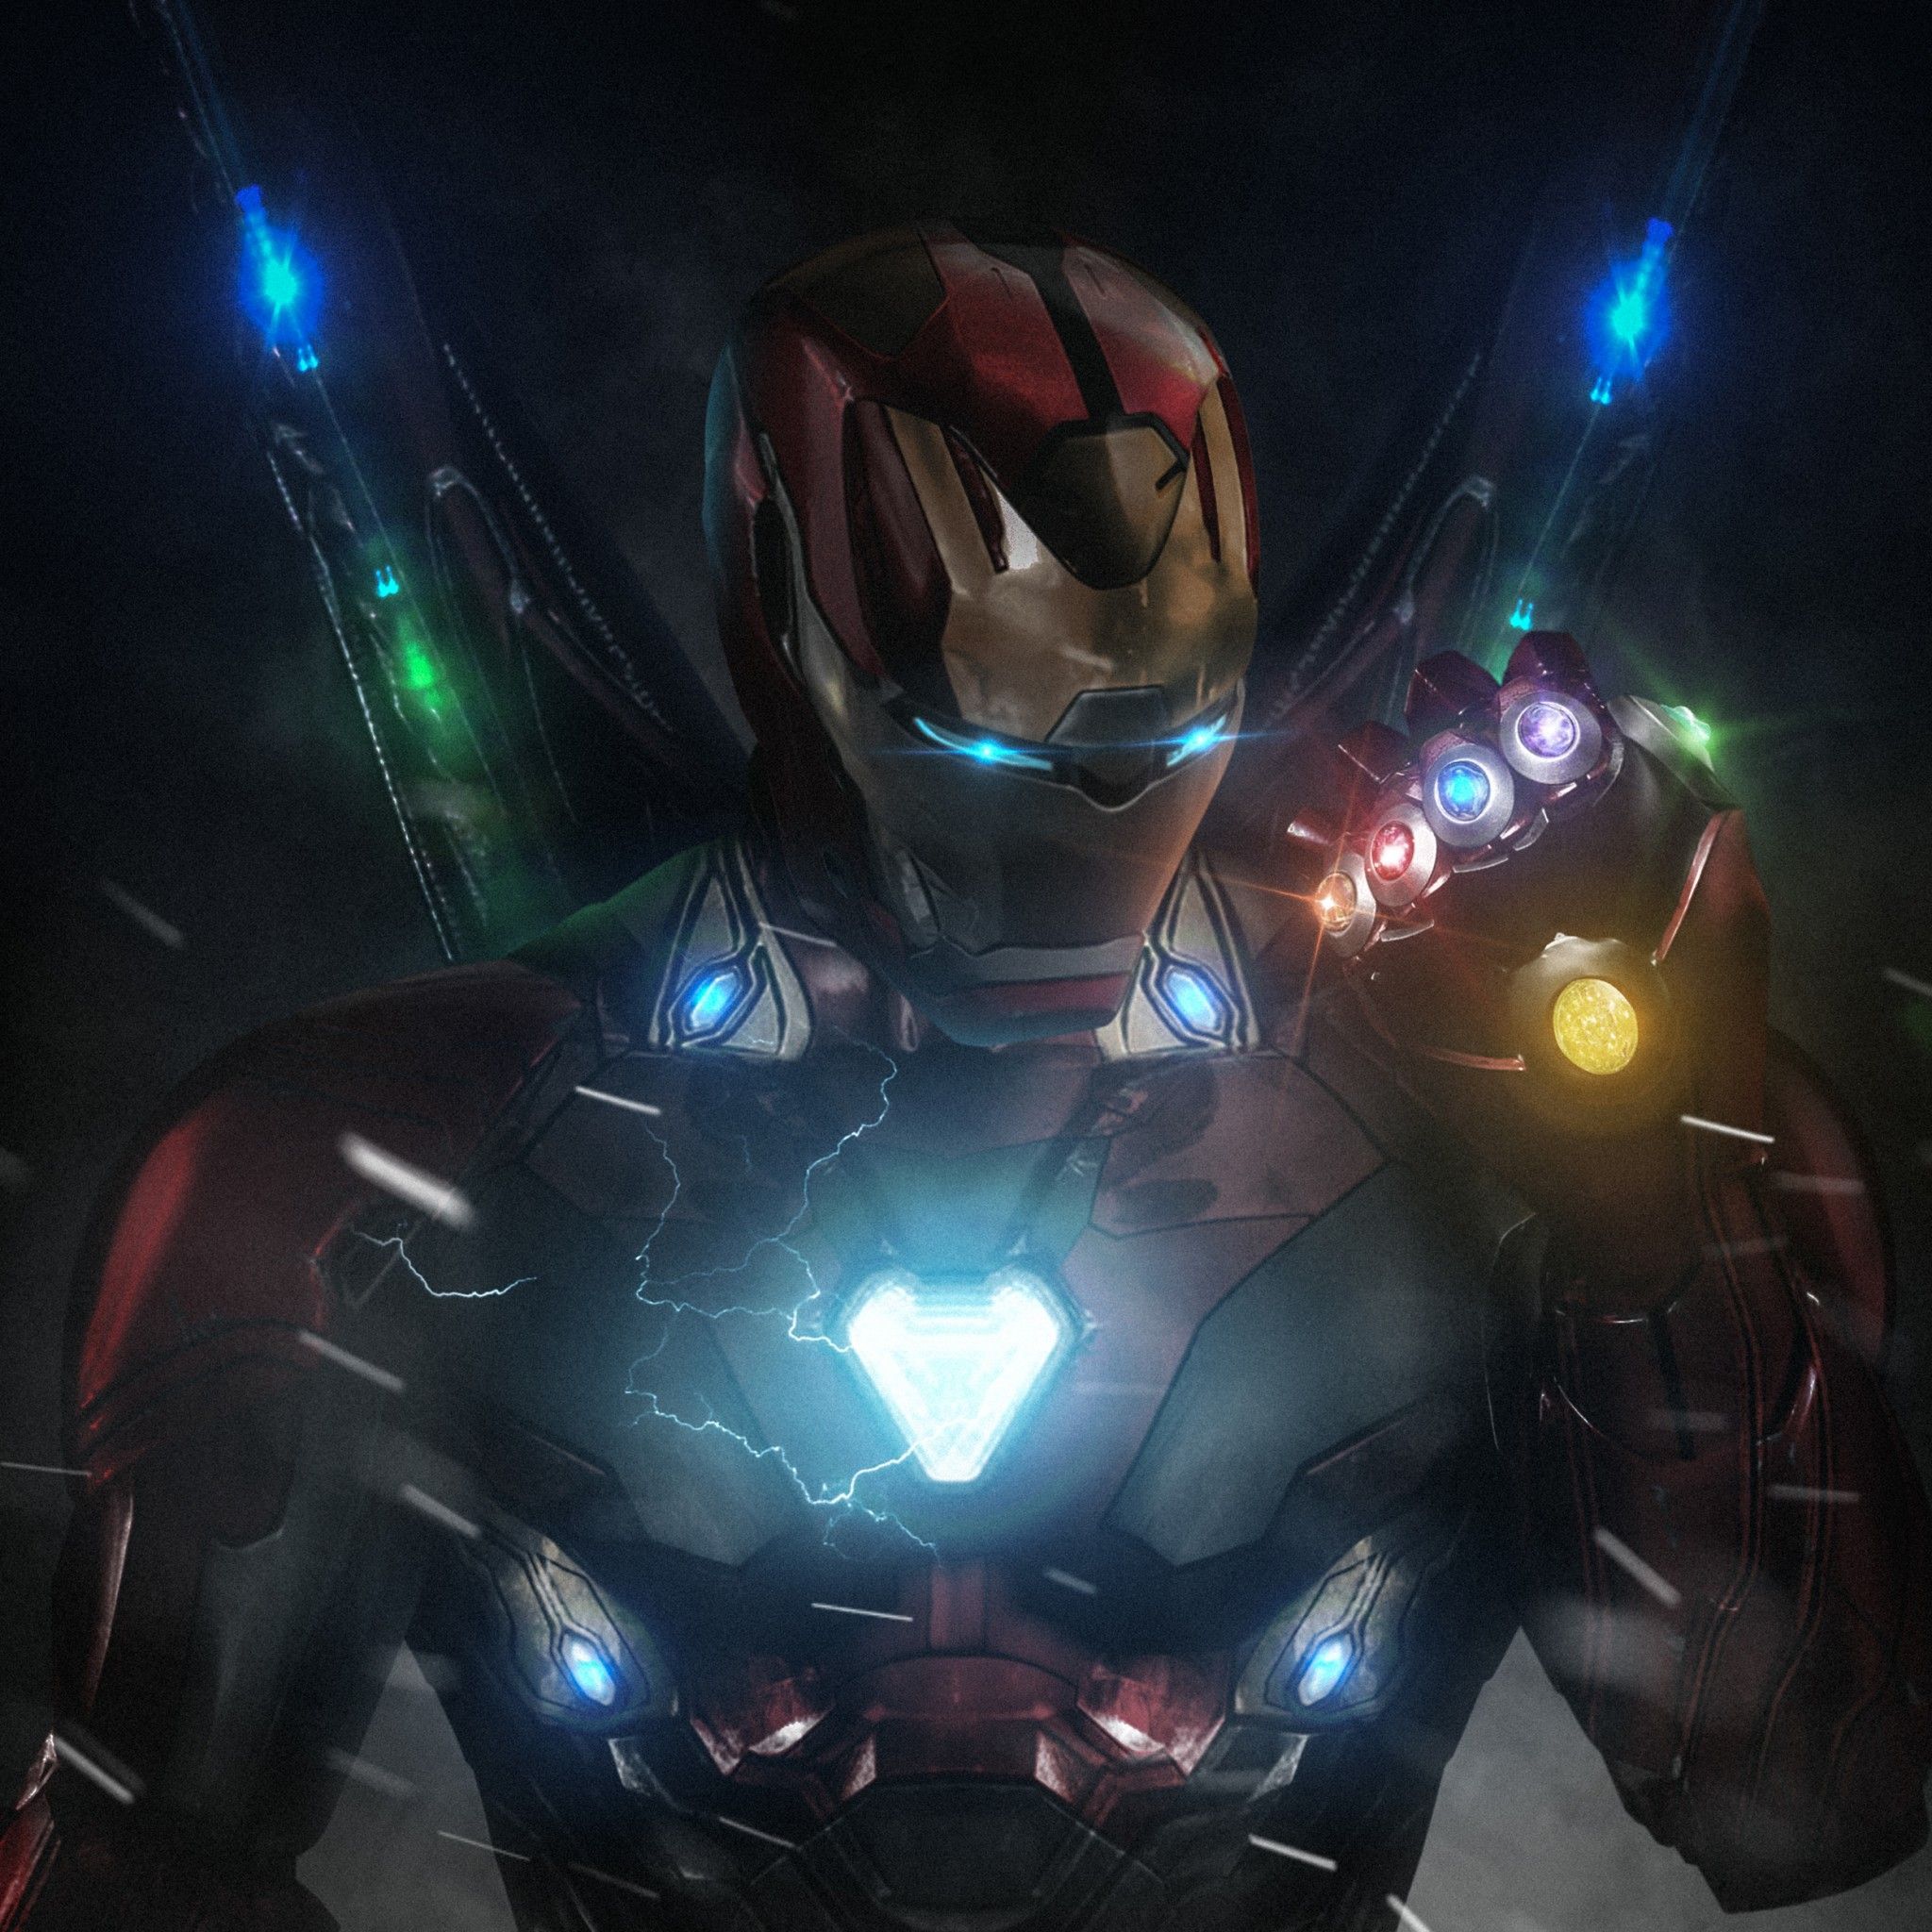 Iron Man Stone. Avengers Endgame. Iron man HD wallpaper, Iron man wallpaper, Iron man